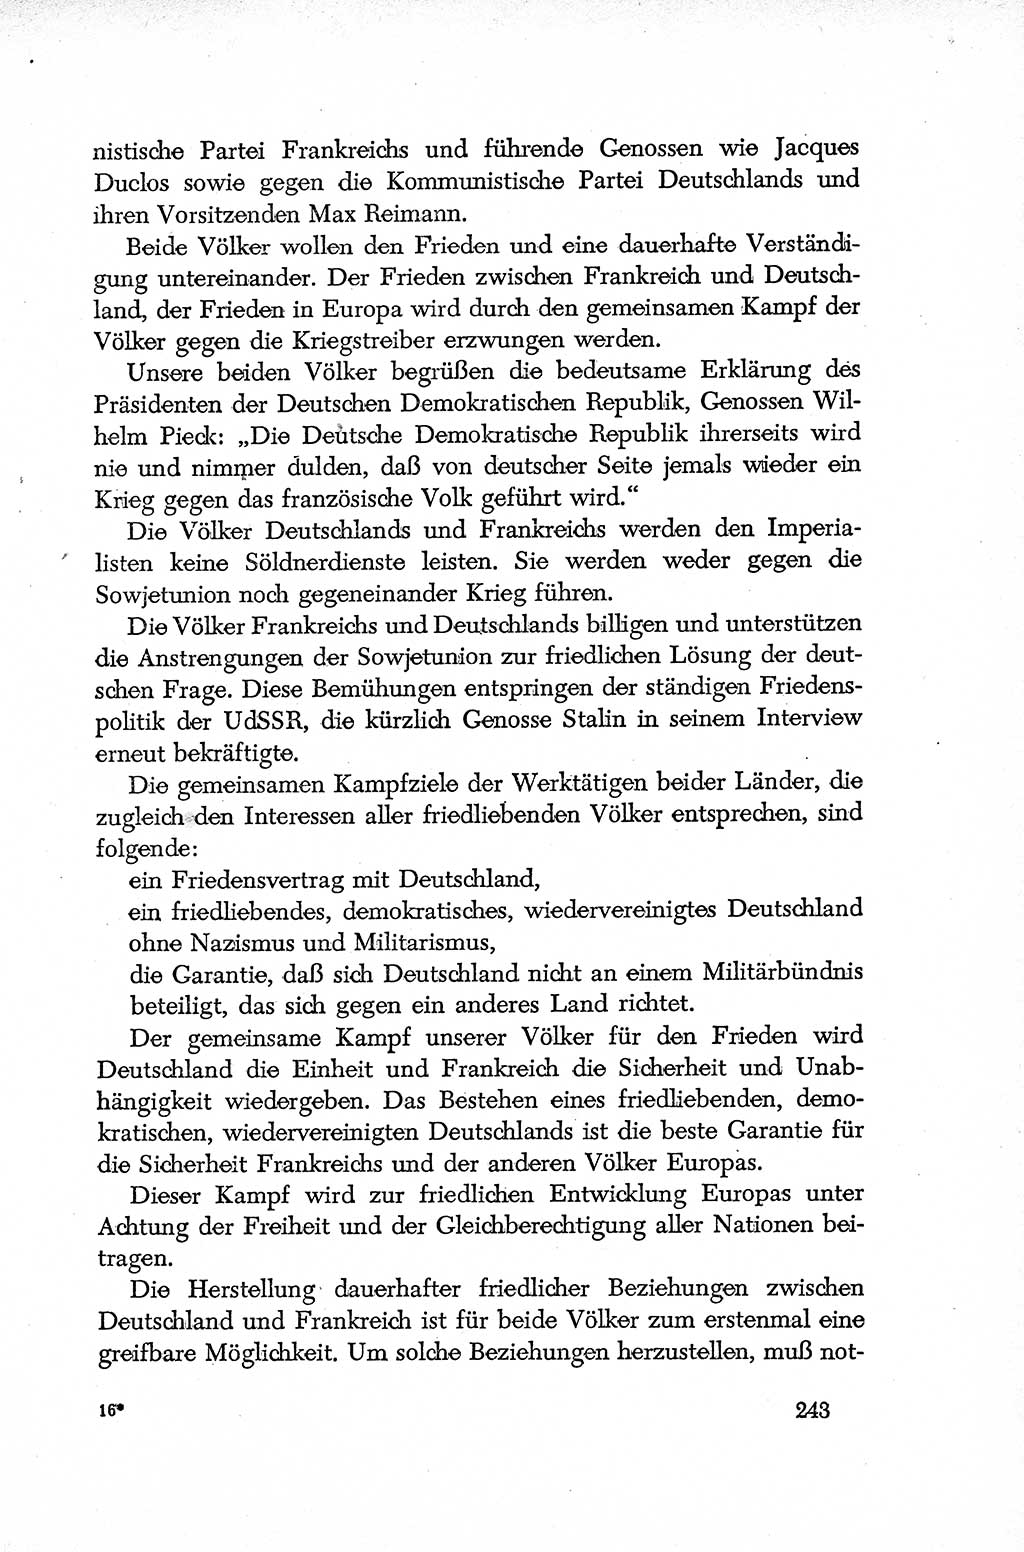 Dokumente der Sozialistischen Einheitspartei Deutschlands (SED) [Deutsche Demokratische Republik (DDR)] 1952-1953, Seite 243 (Dok. SED DDR 1952-1953, S. 243)